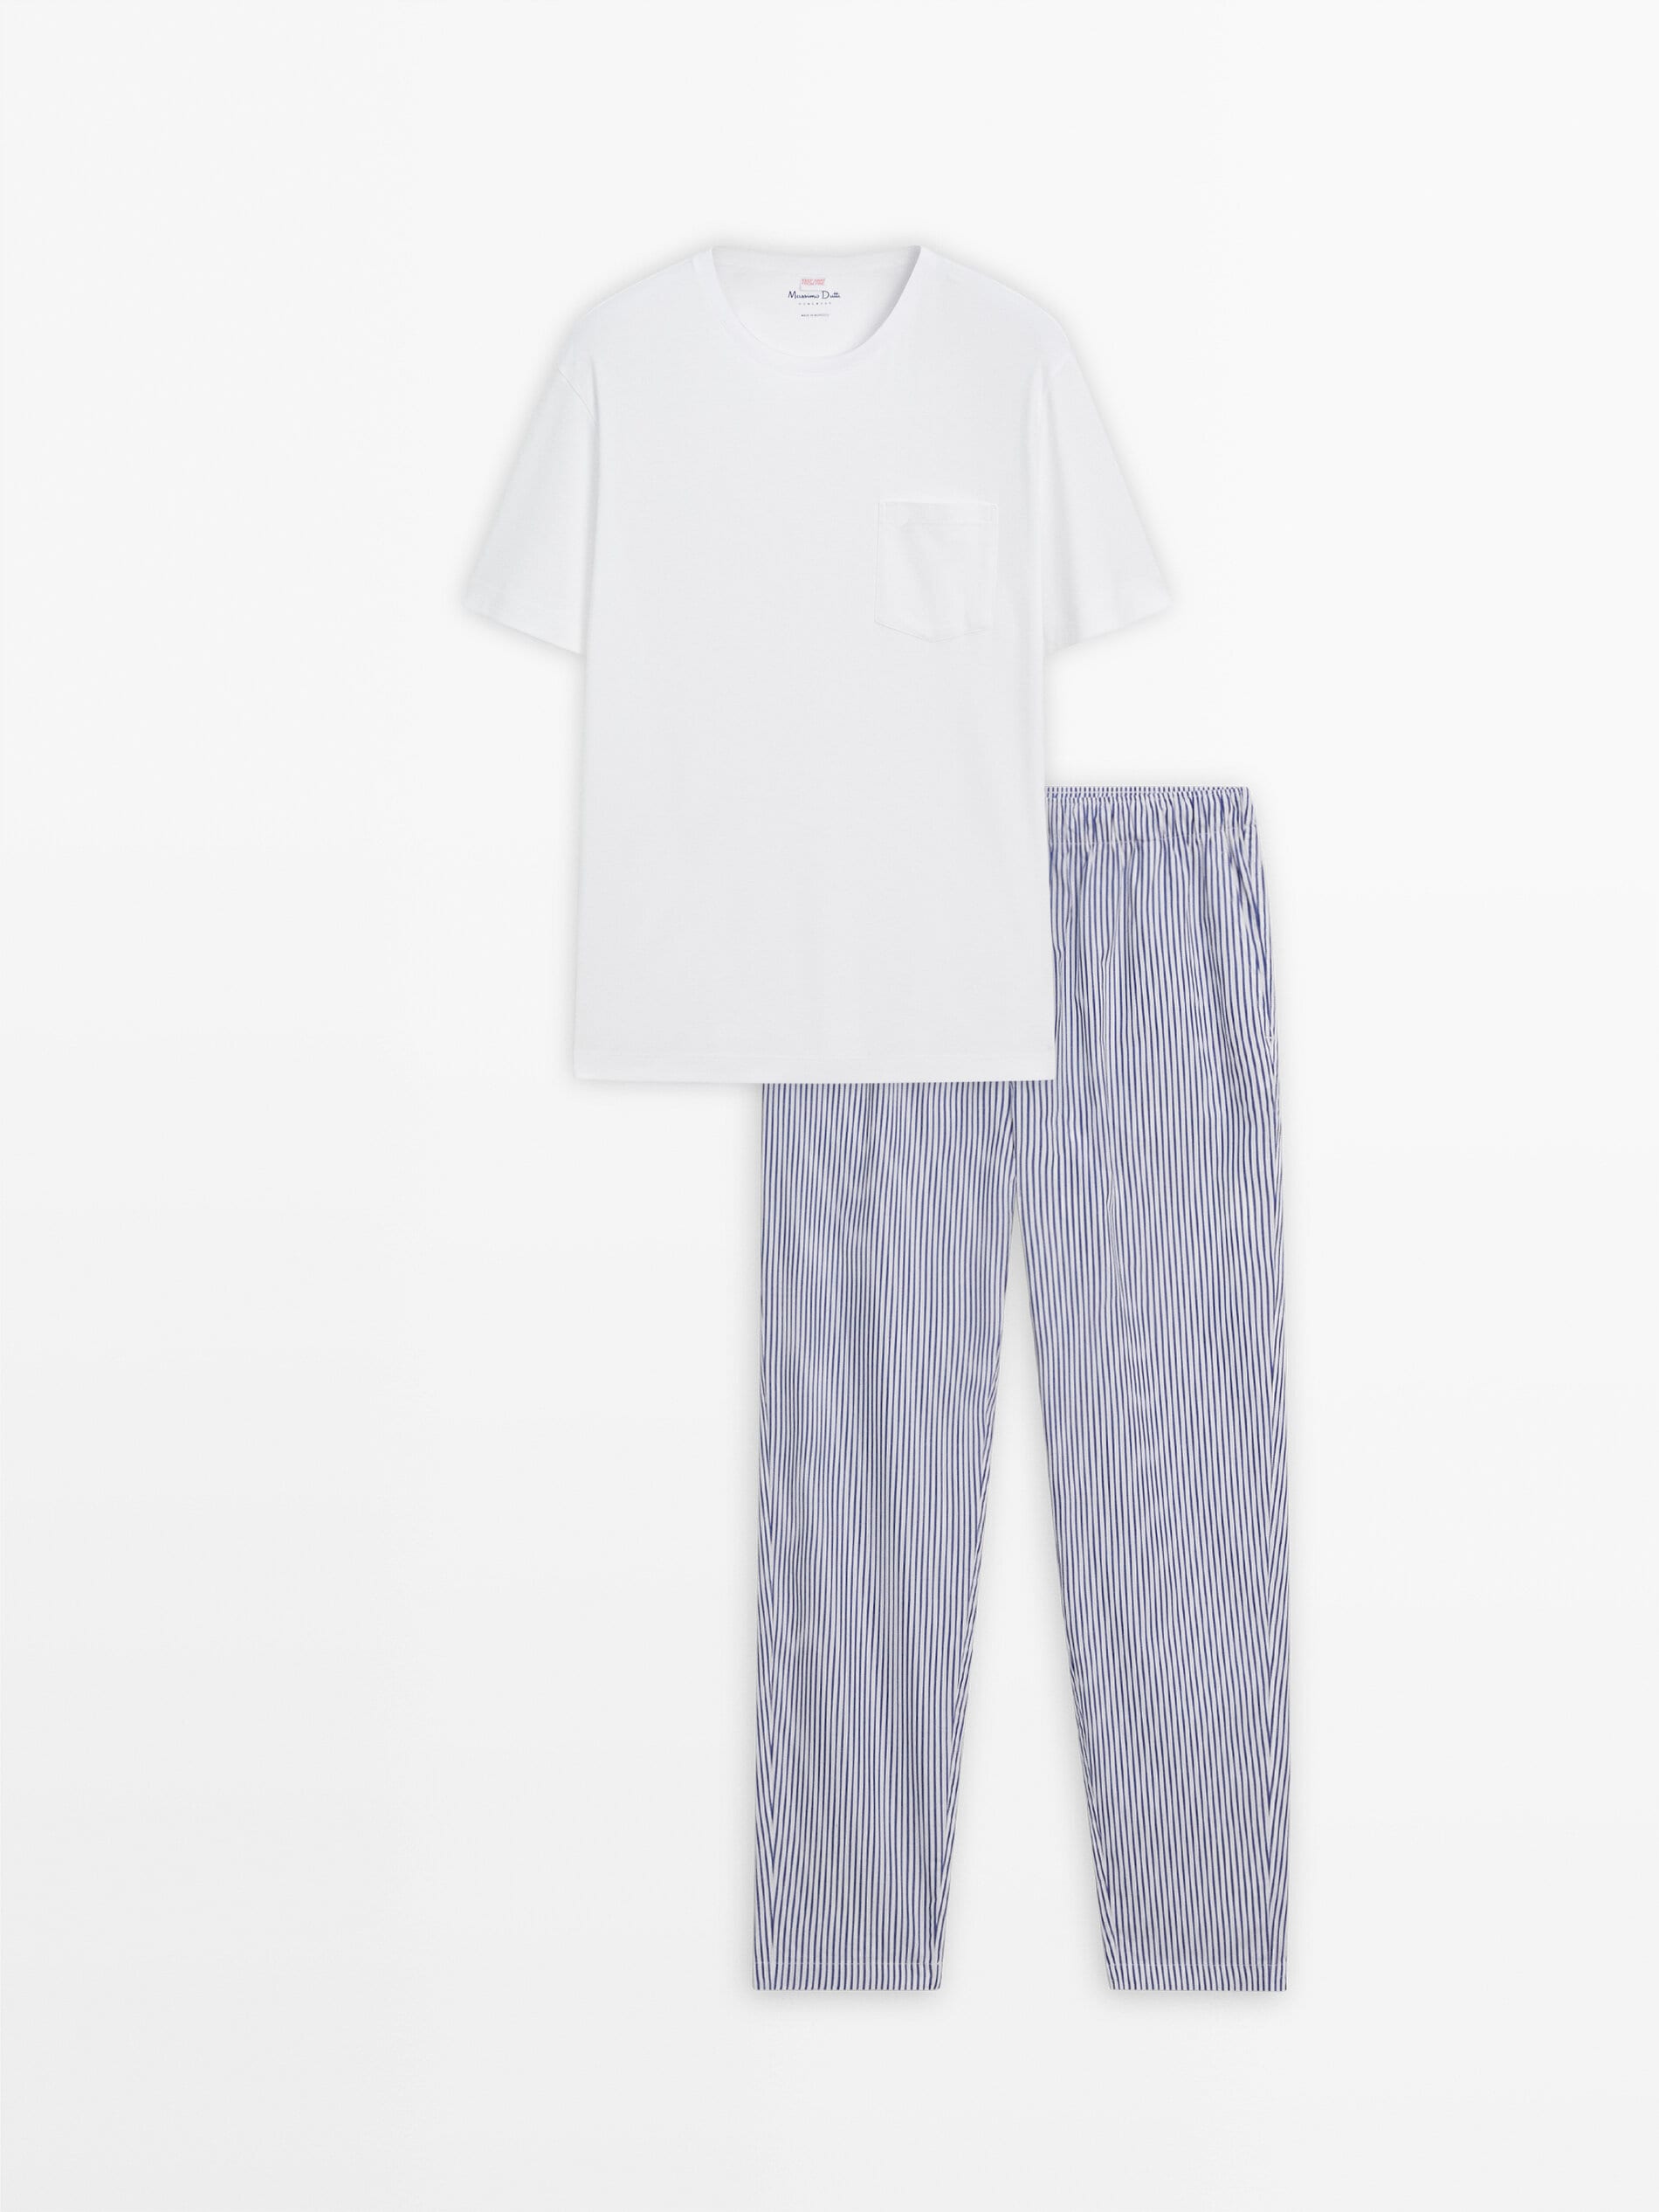 Полосатые пижамные штаны и футболка с короткими рукавами Massimo Dutti, белый